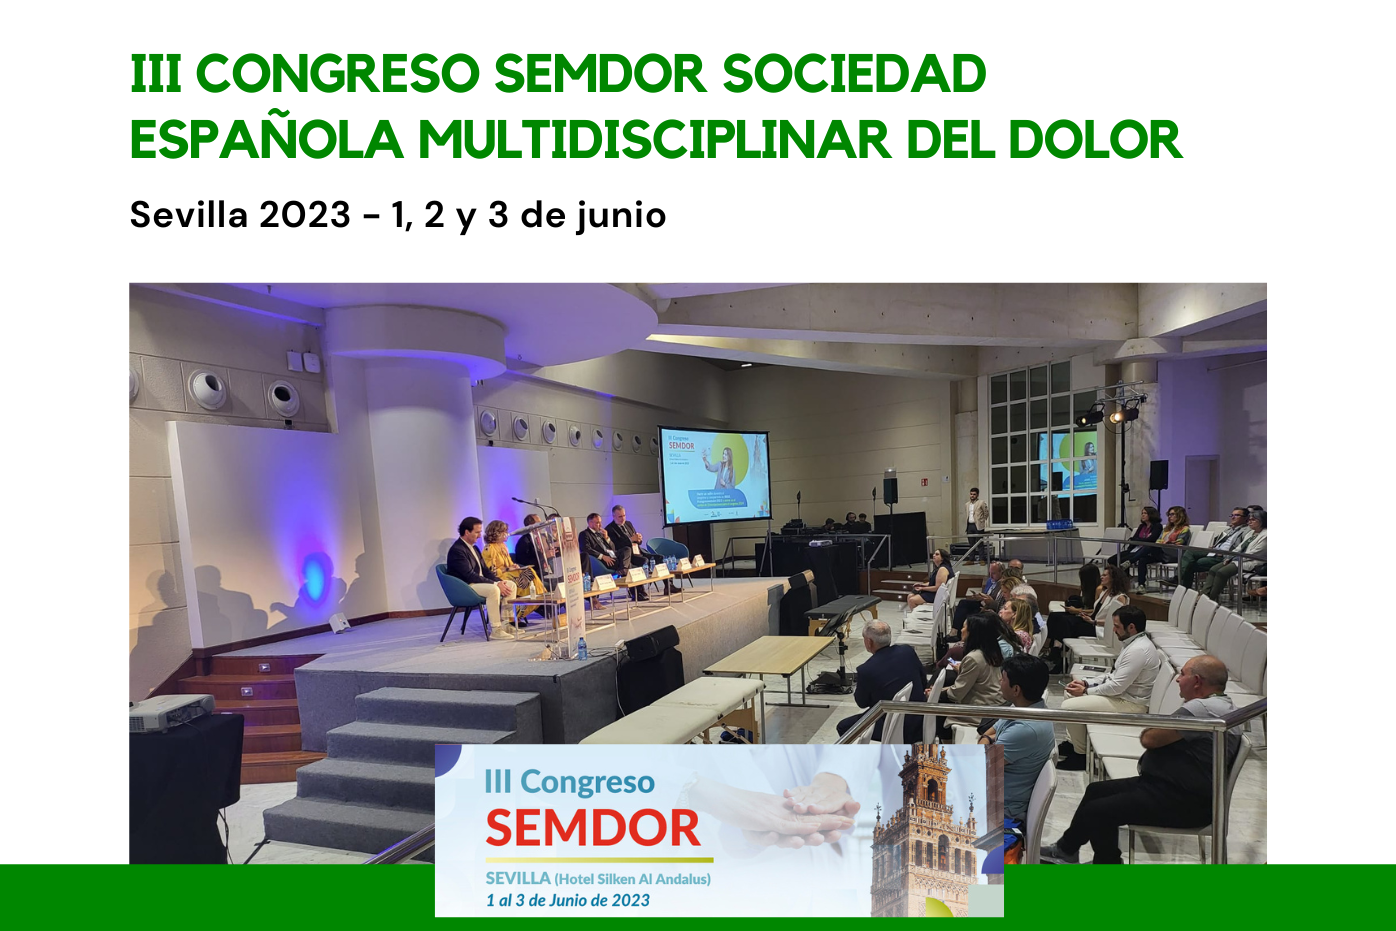 Oyasama en el III Congreso SEMDOR de la Sociedad Española Multidisciplinar del Dolor